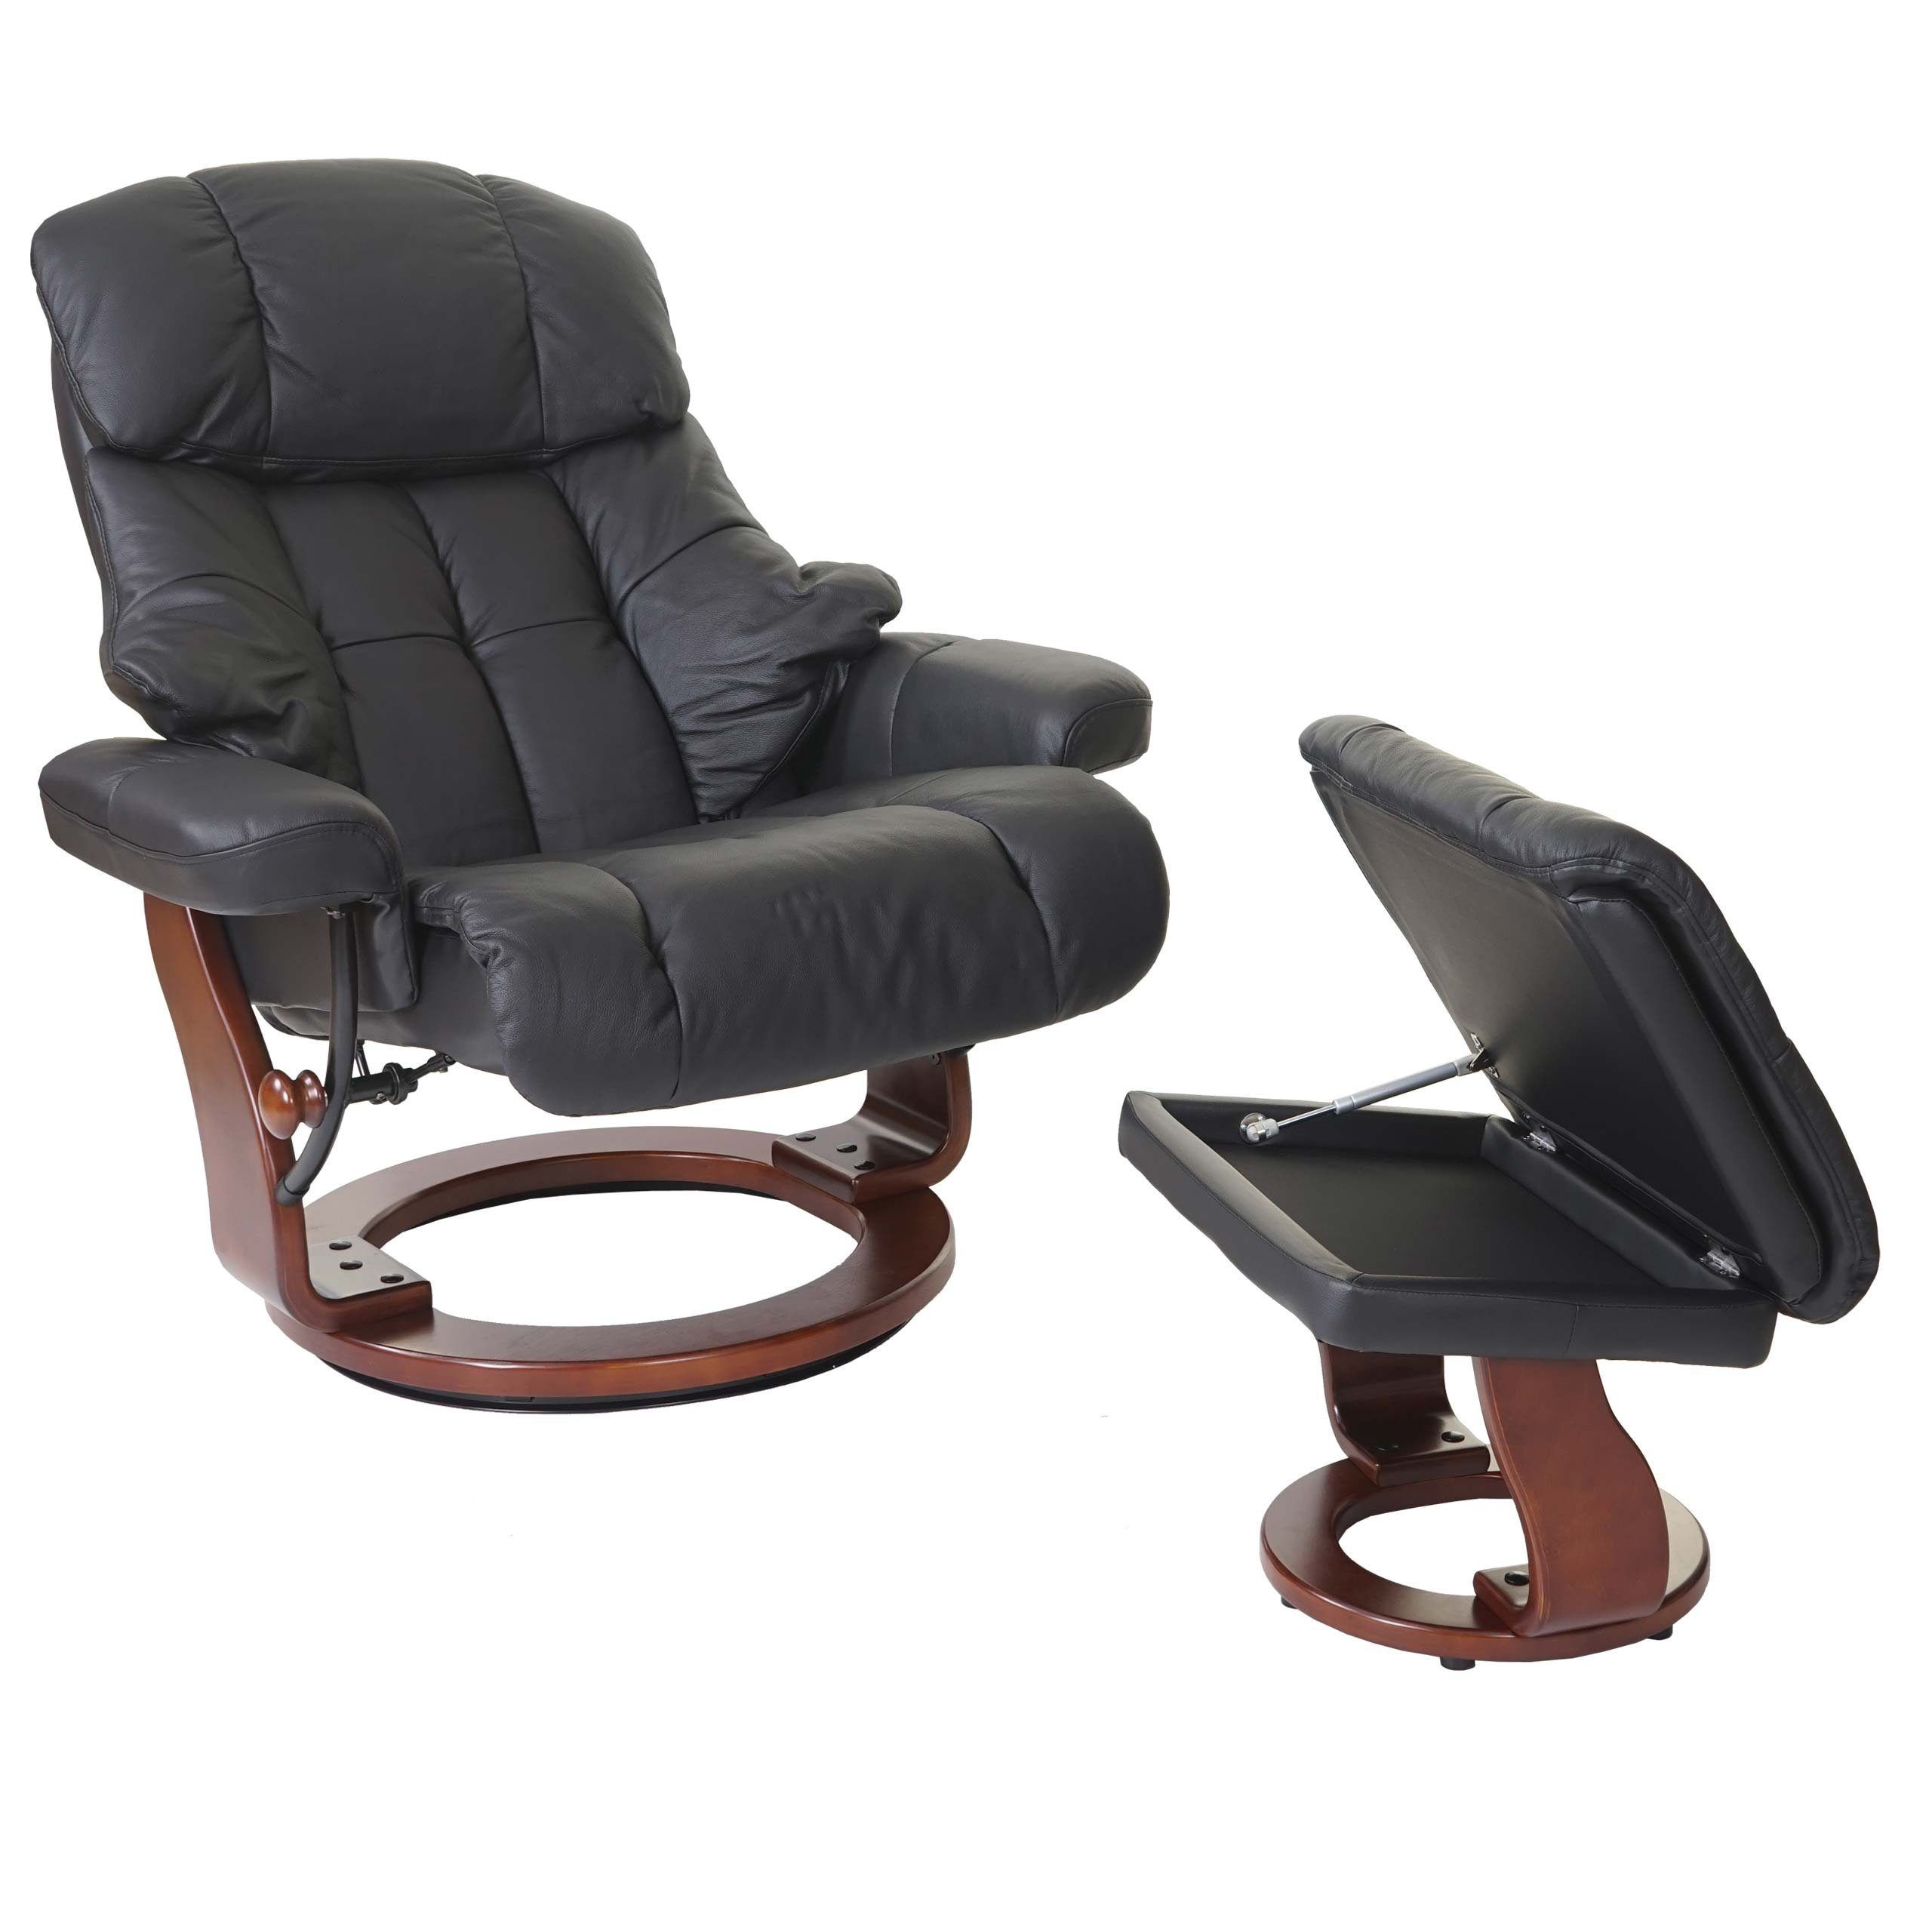 MCA furniture Relaxsessel Windsor XXL, inklusive Fußhocker schwarz, Staufach Polsterung, mit Walnuss-Optik Extradicke gepolstertem